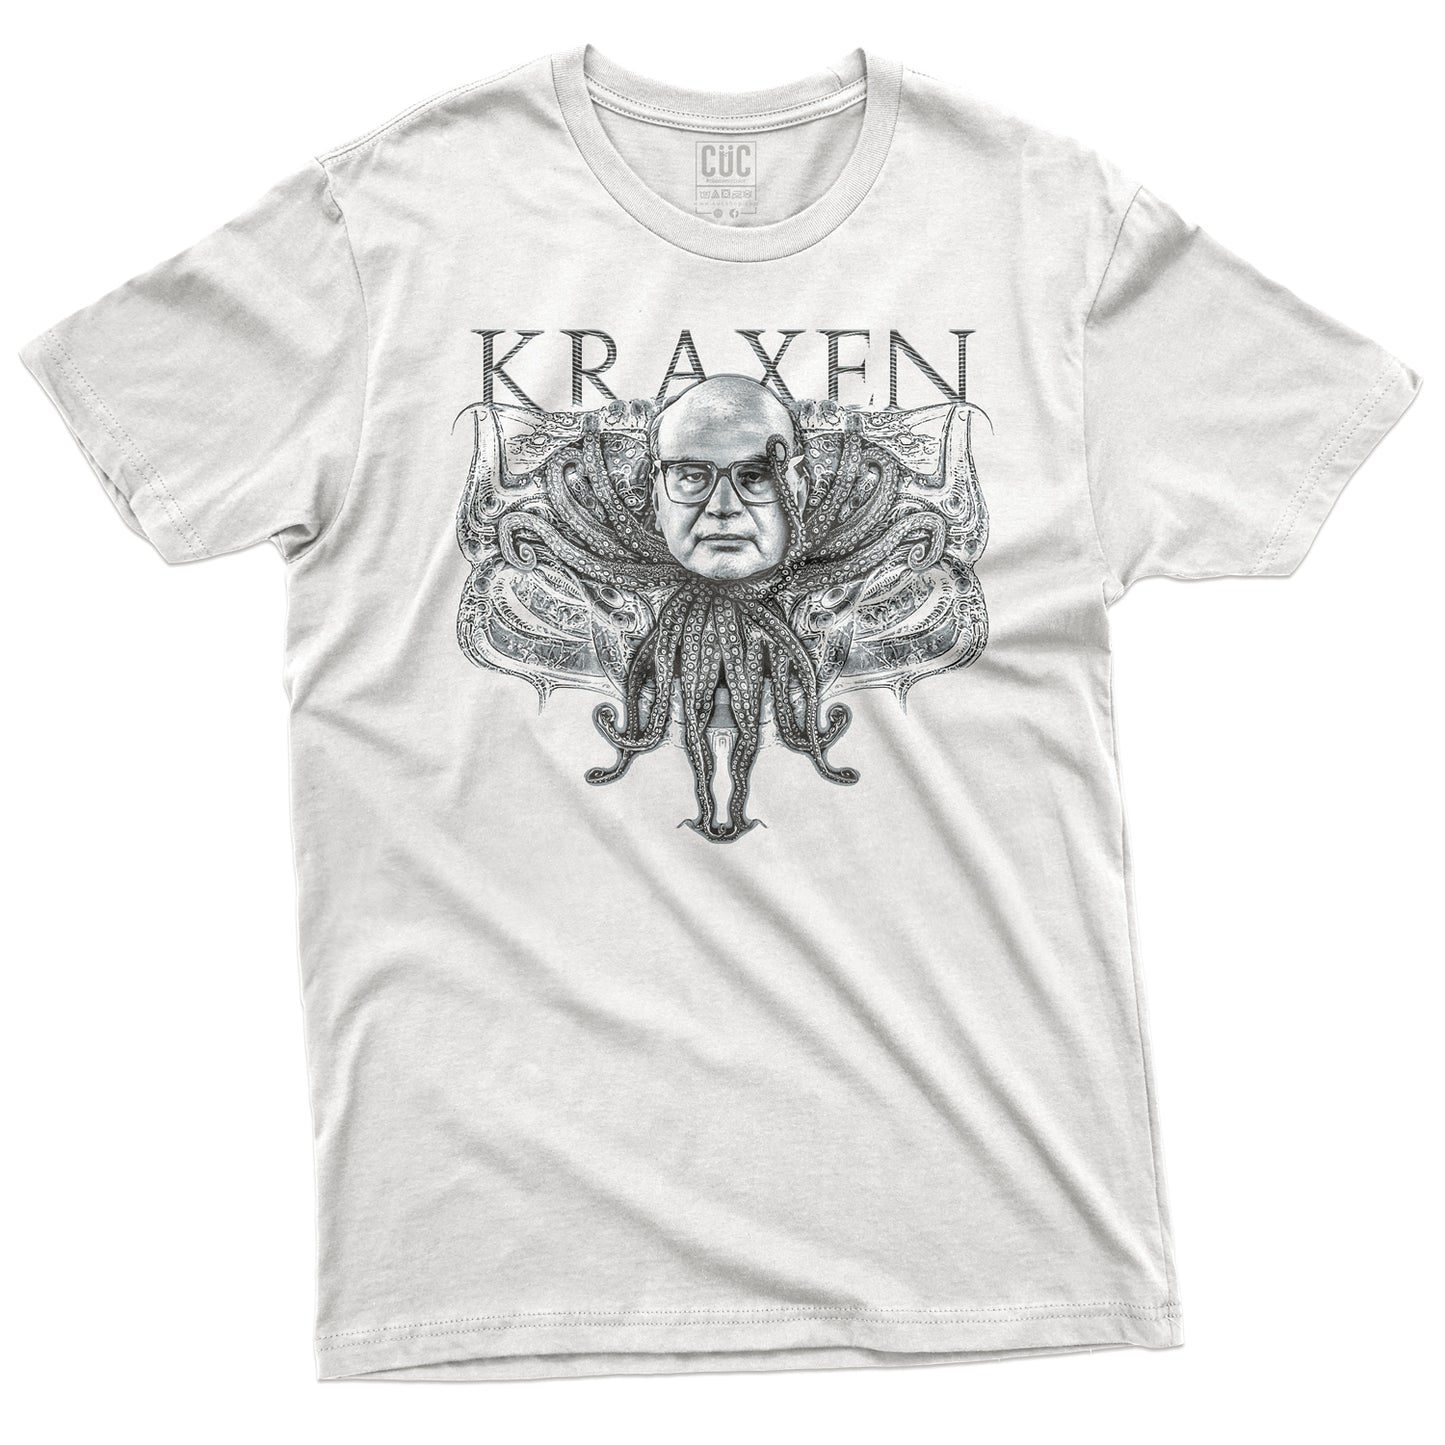 CUC T-Shirt KRAXEN - Kraken - Craxi -Prima Repubblica #chooseurcolor